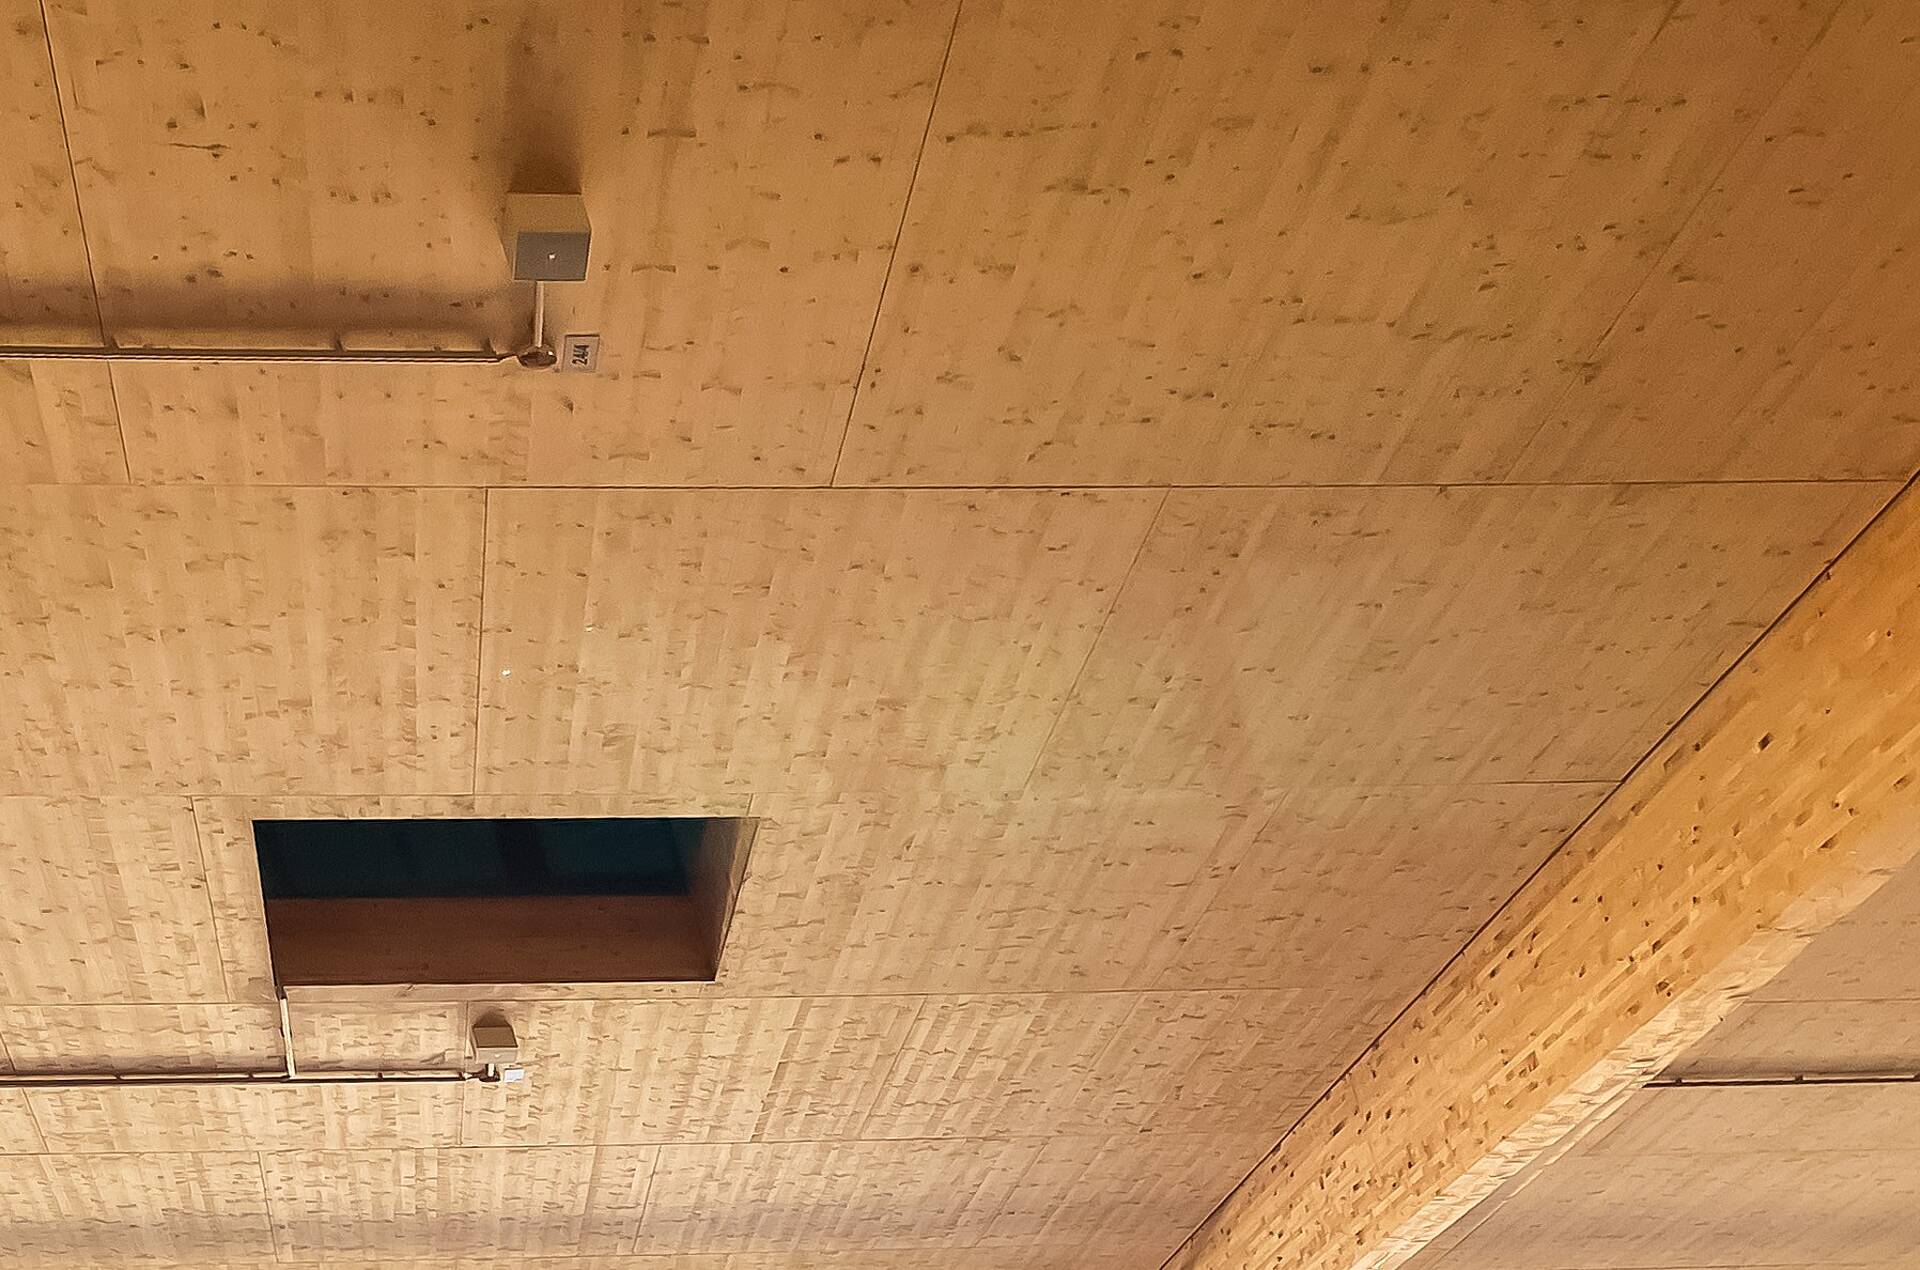 Neubau / Dachkonstruktion von ATC Holzbau